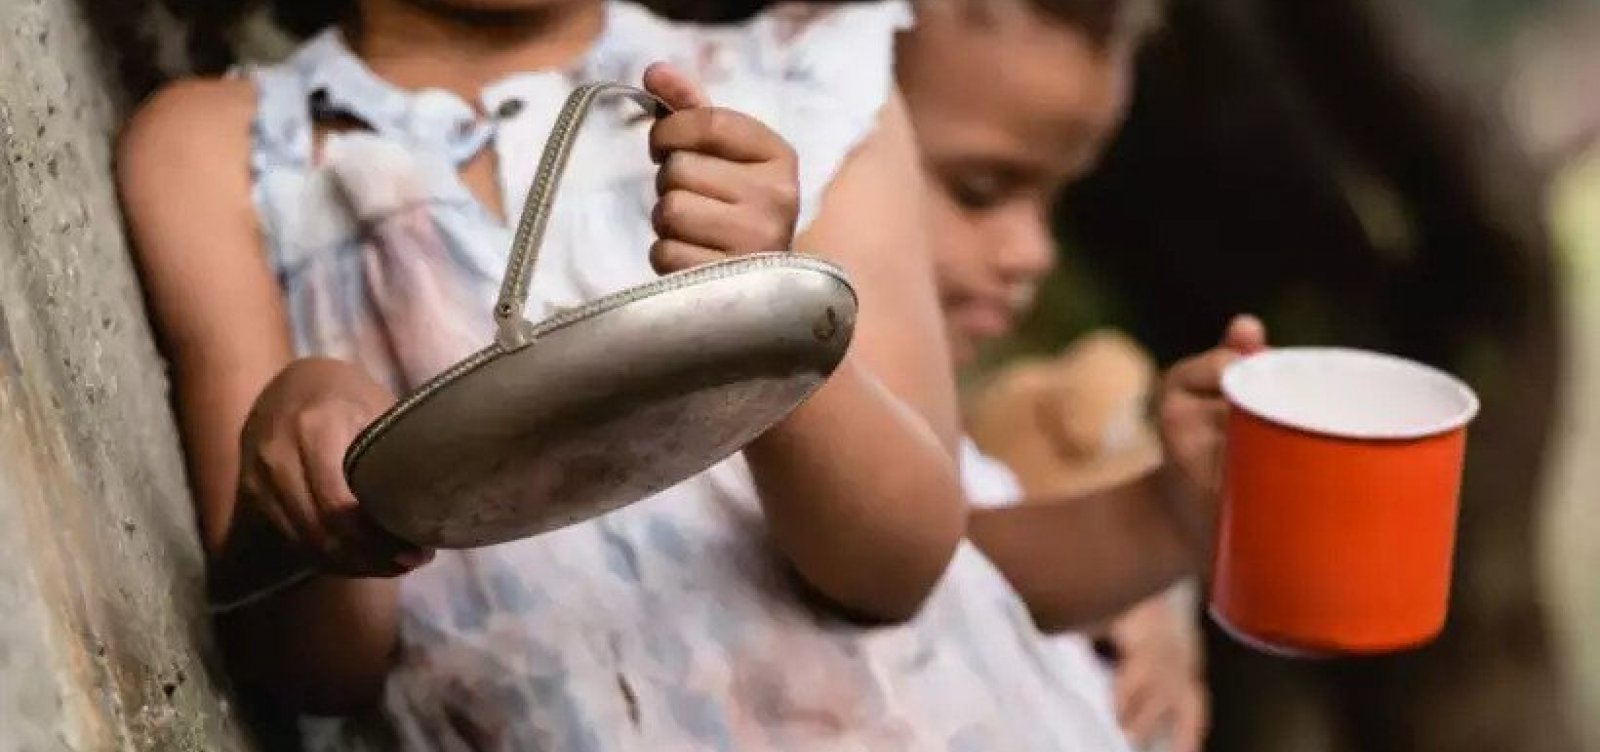 Cerca de 33 milhões de brasileiros passam fome no Brasil, aponta pesquisa